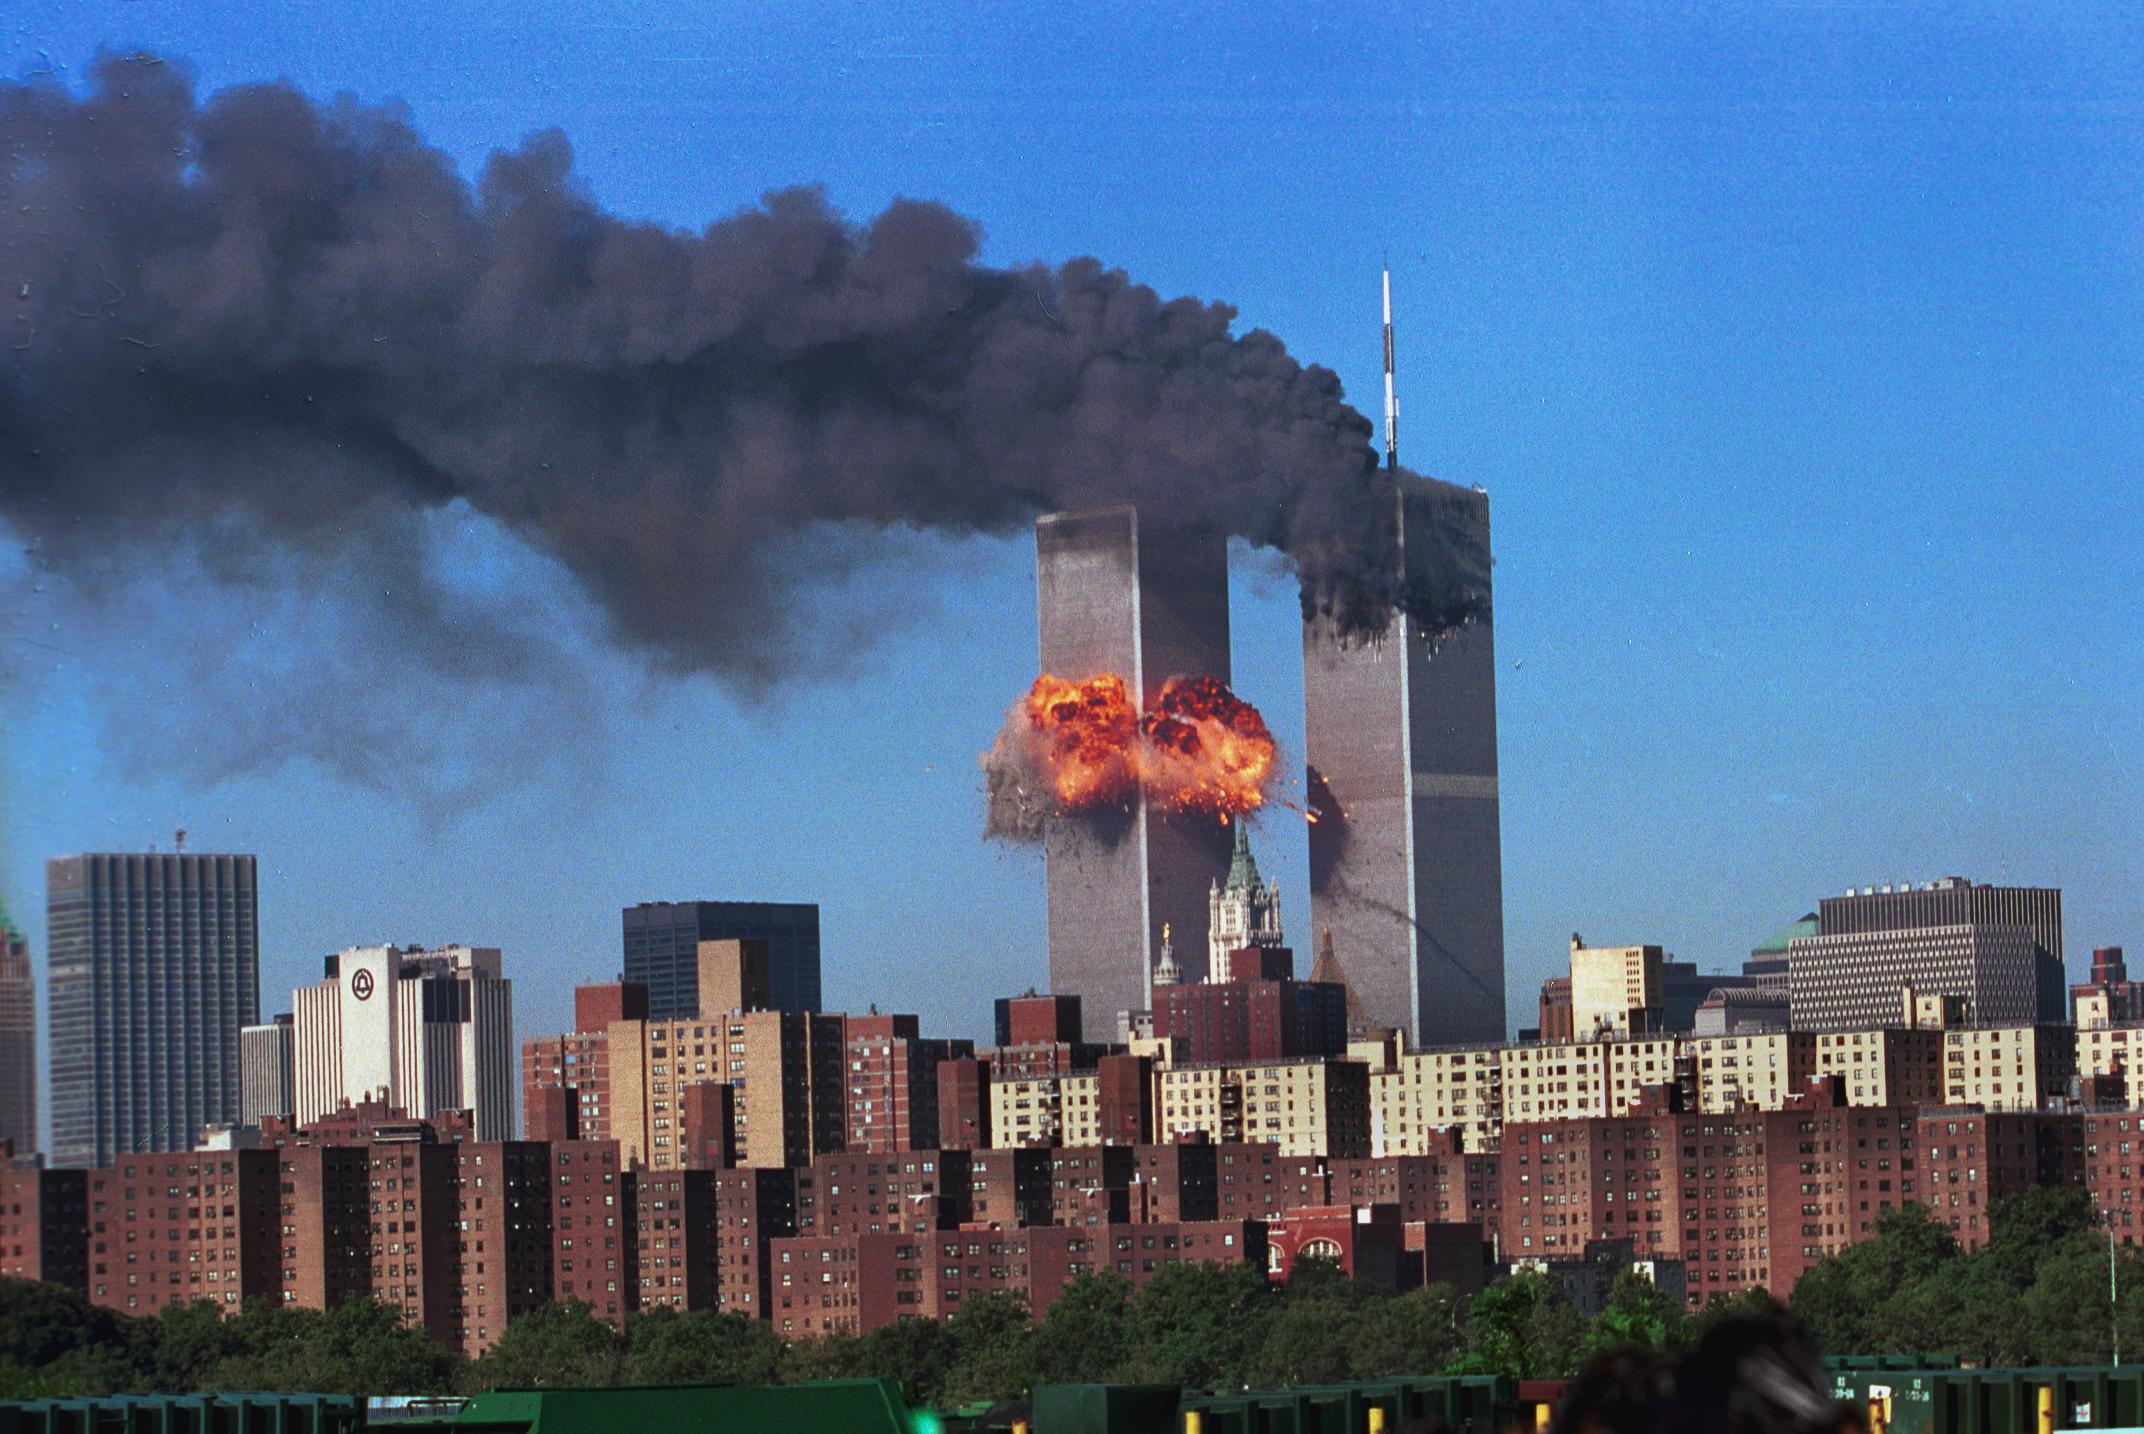 башни близнецы до 11 сентября